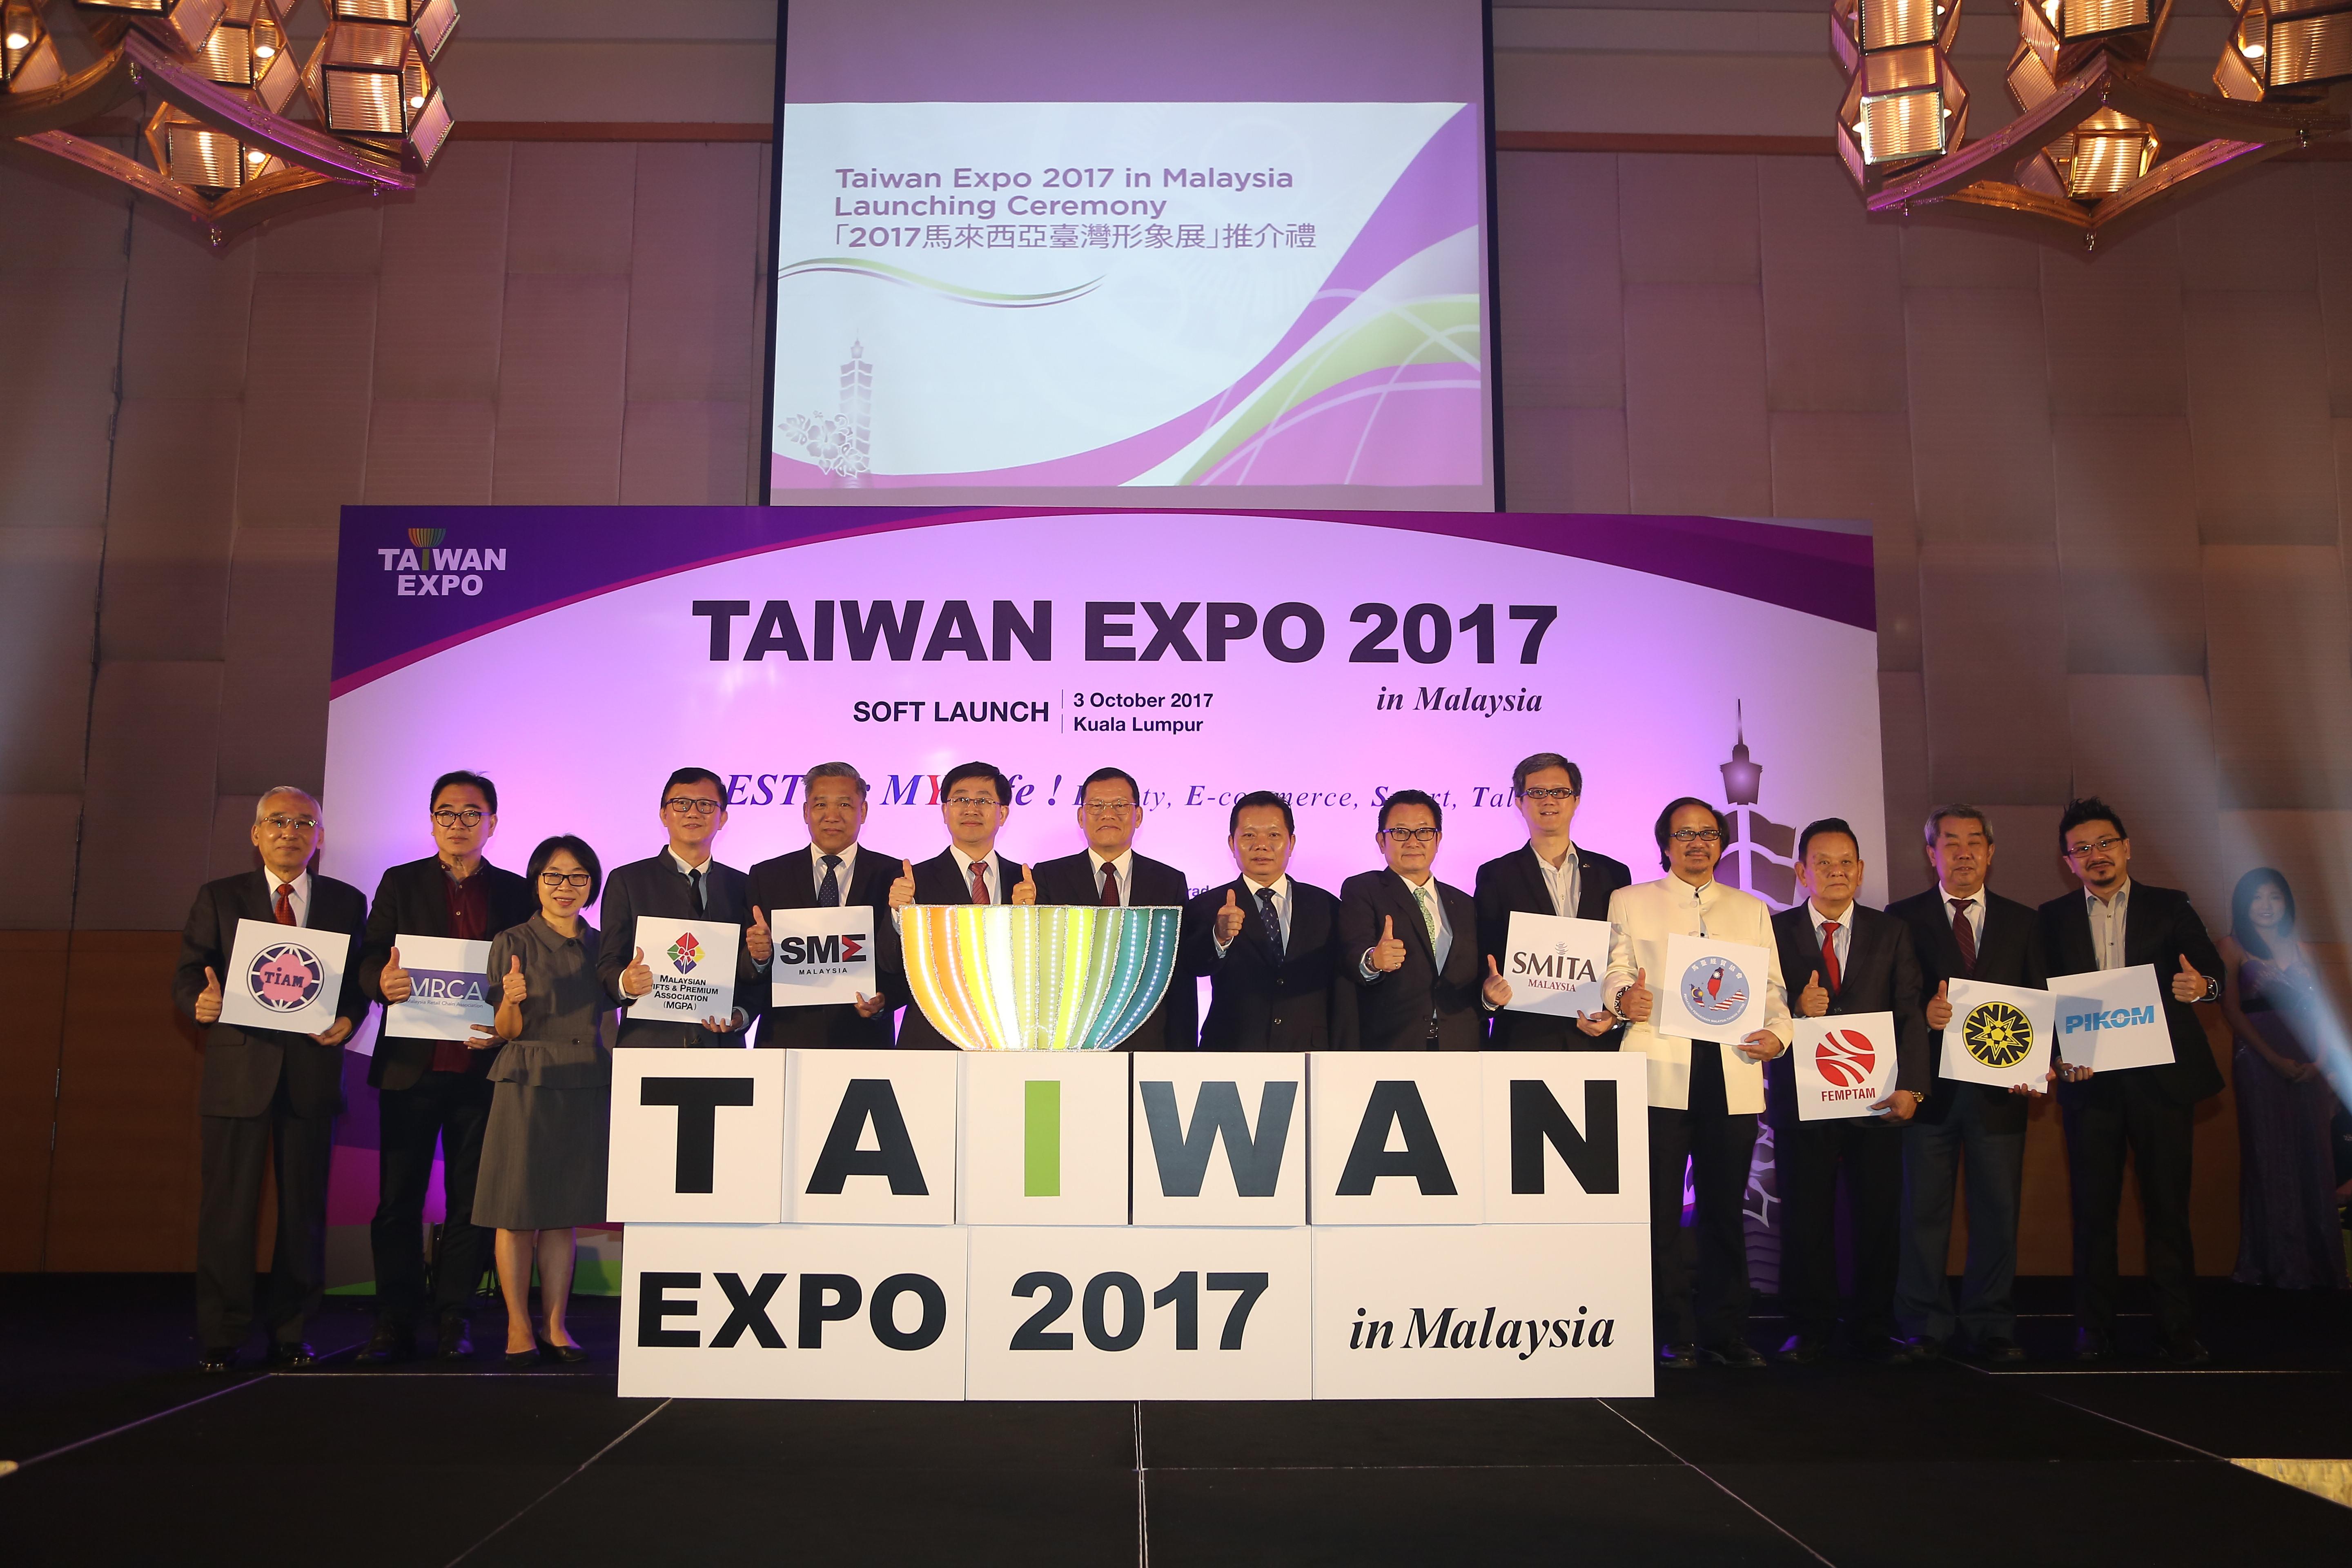 Wakil Chang, James Chi-Ping (ke-7 dari kiri) menghadiri Soft Launch Taiwan Expo 2017 in Malaysia di Pullman Hotel Kuala Lumpur pada 3 Oktober, 2017